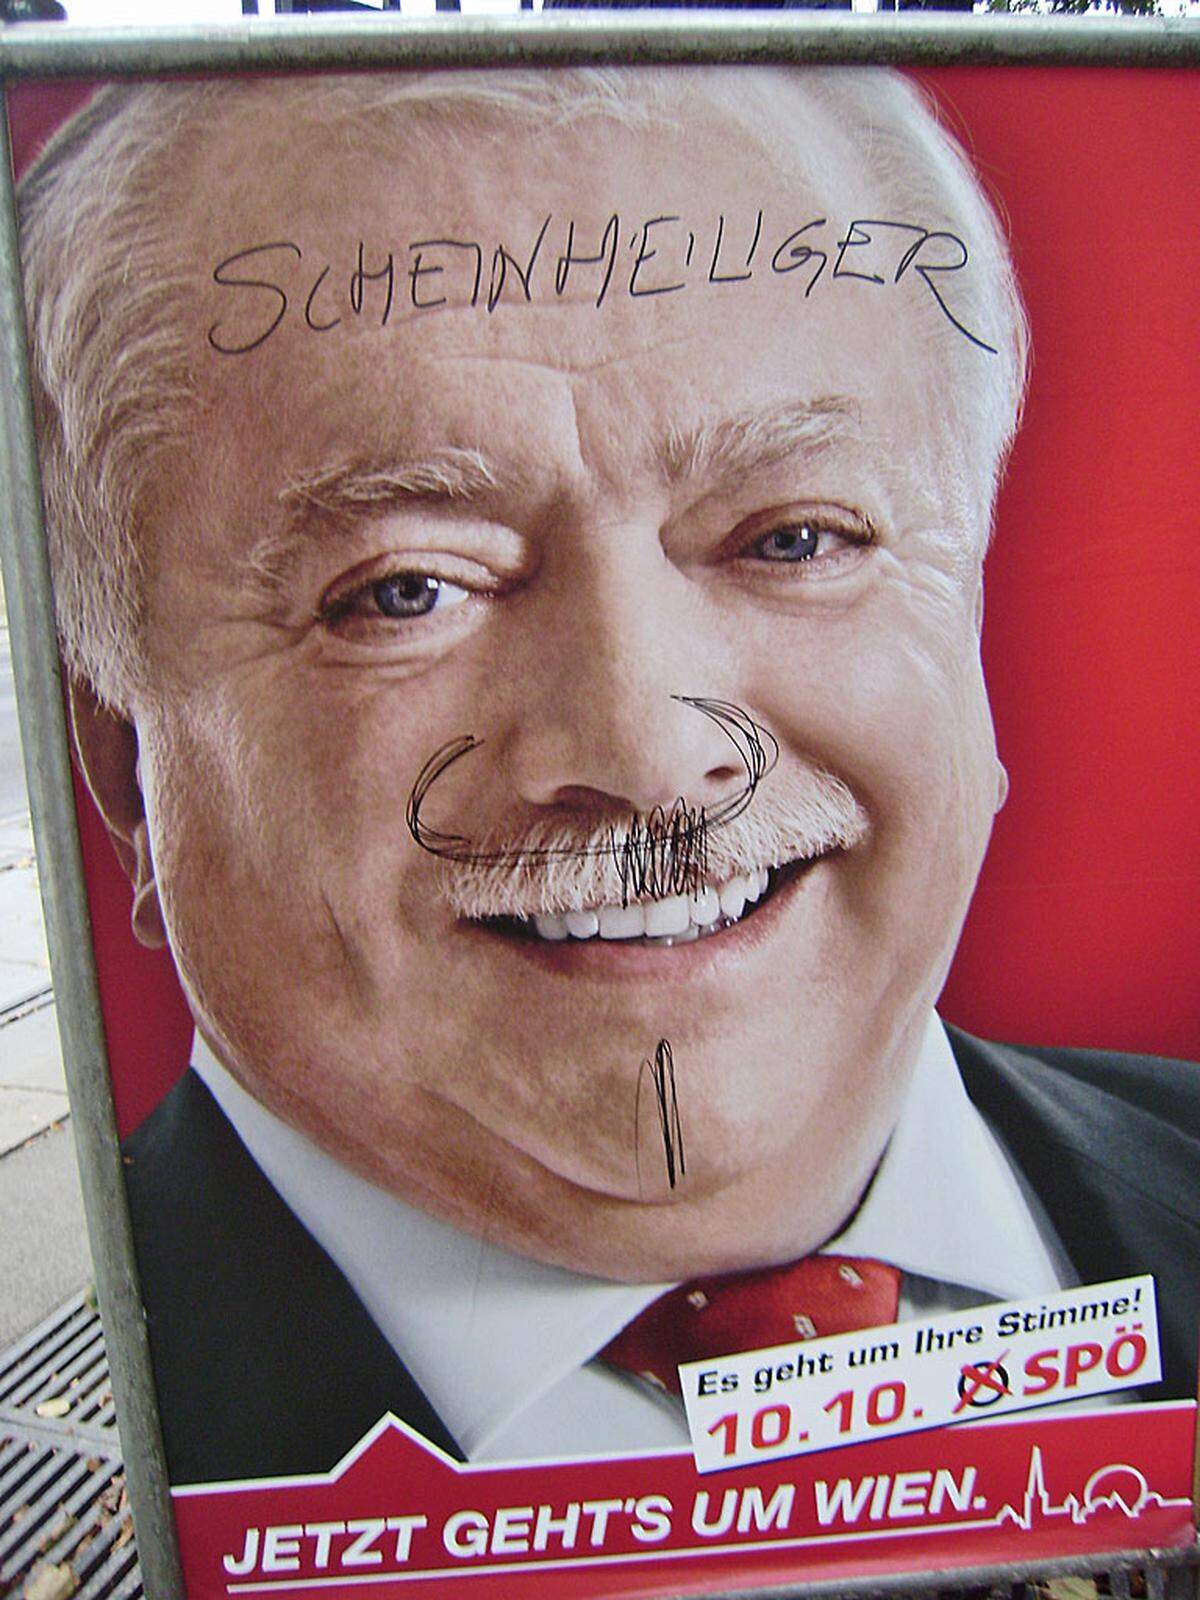 Sehr beliebt ist auch das Aufmalen von Bärtchen, nicht nur von Hitlerbärtchen, wie man auf diesem Plakat mit Bürgermeister Michael Häupl sieht. Der beigefügte Kommentar sollnoch darüber hinaus den SPÖ-Slogan konterkarieren.